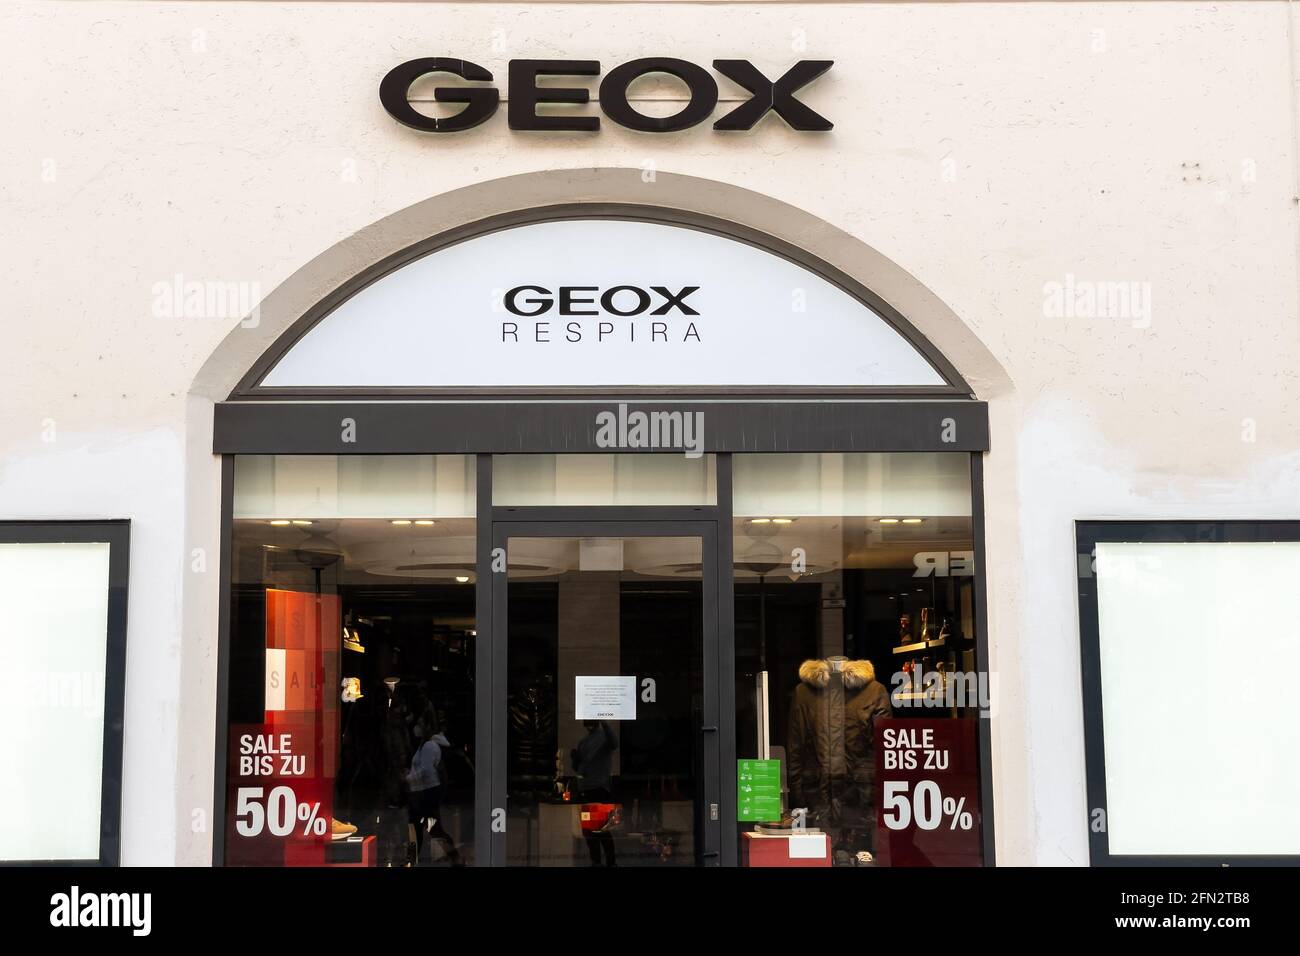 Geox immagini e fotografie stock ad alta risoluzione - Alamy